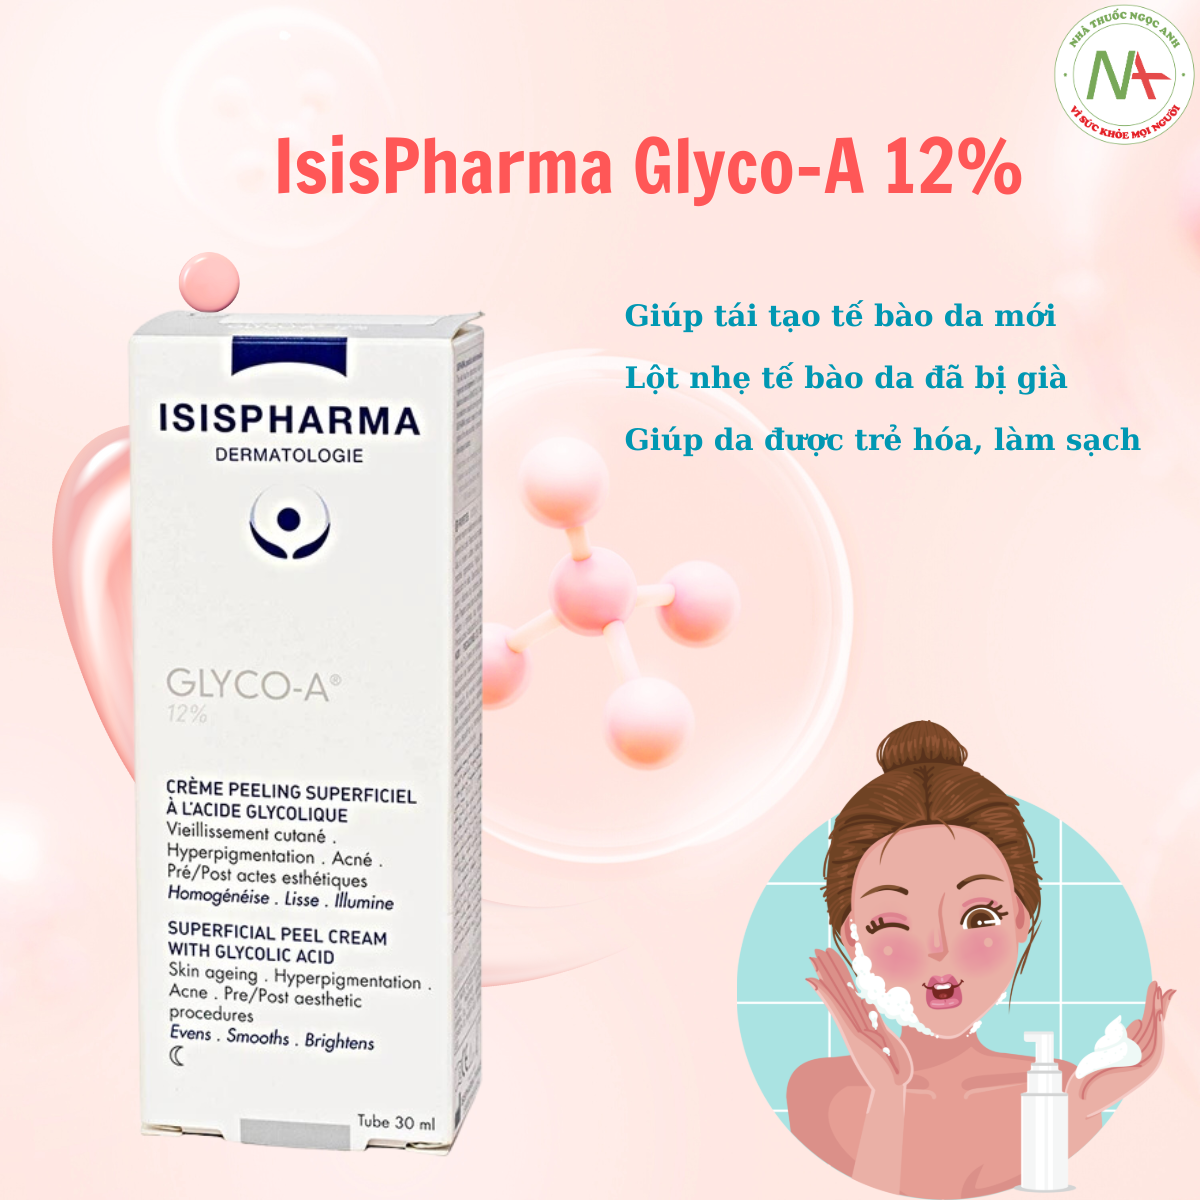 IsisPharma Glyco-A 12%